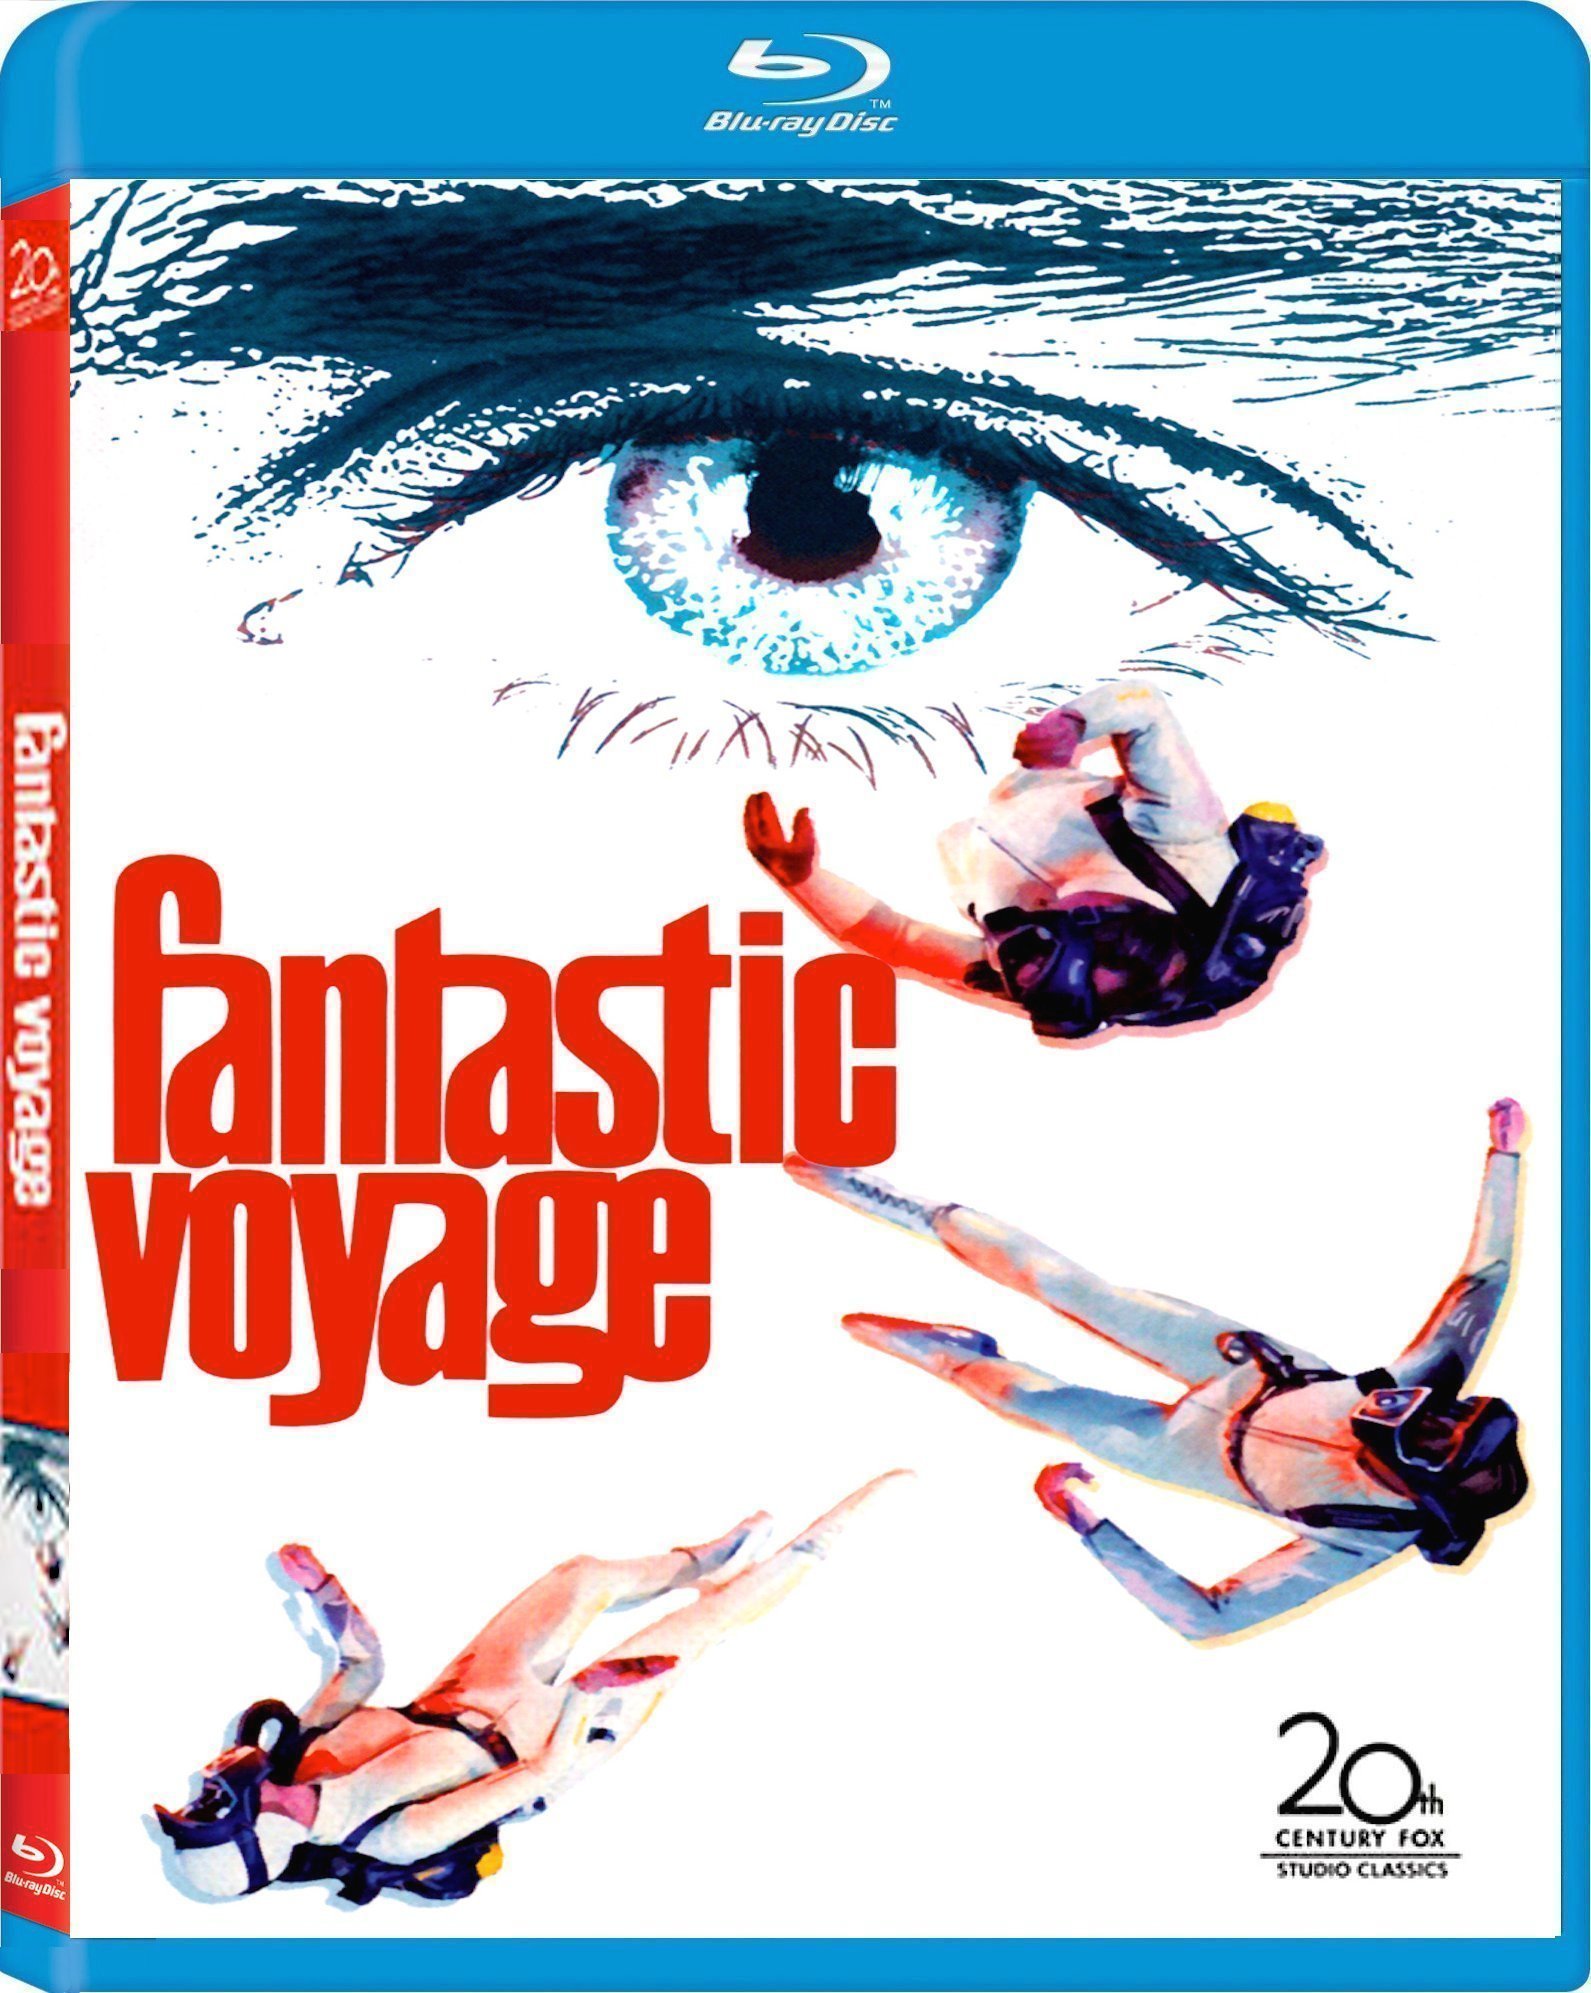 fantastic voyage 1 2 3 4 (sumpin' new)